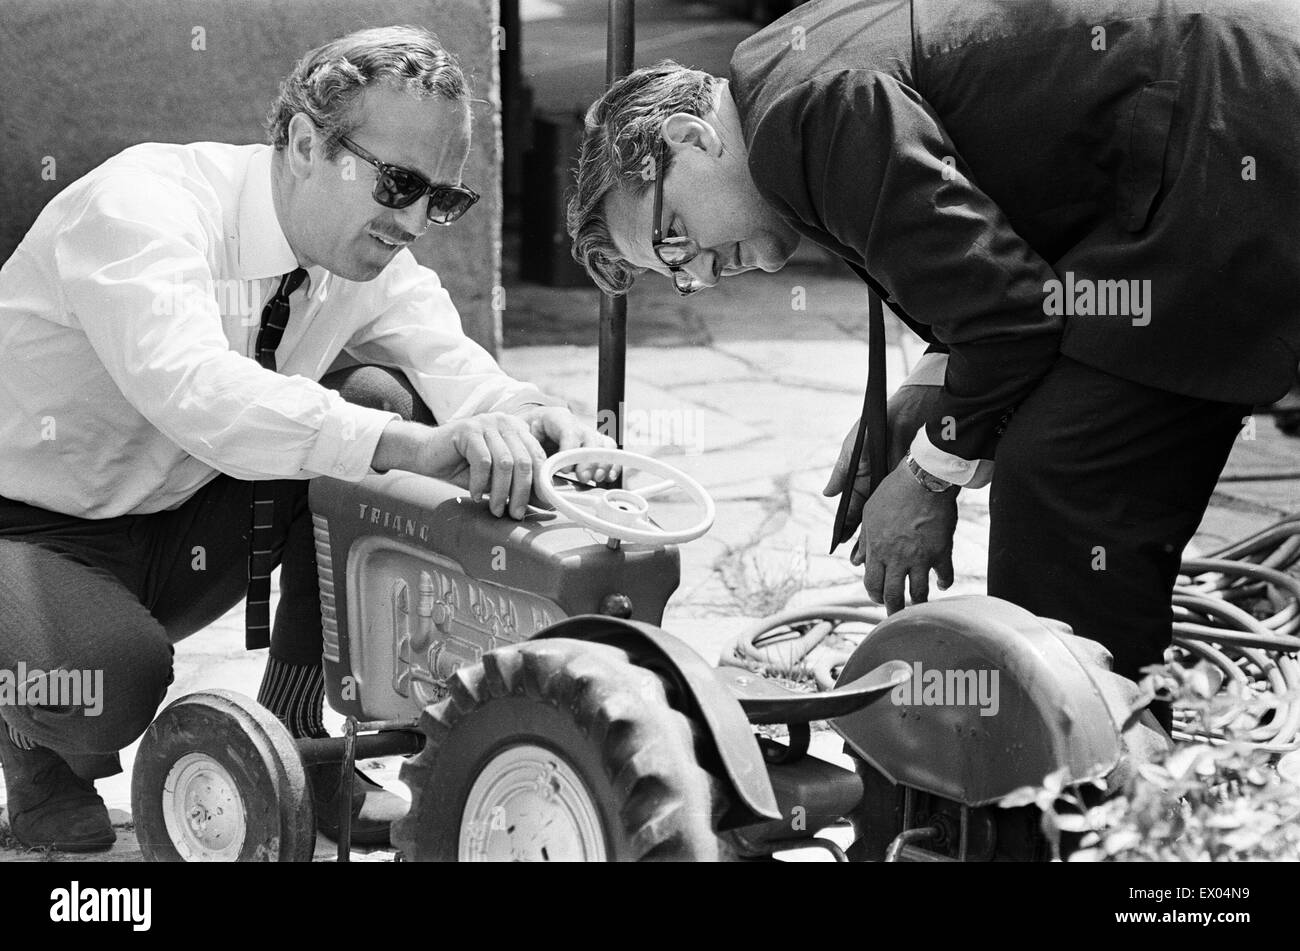 Garden Party a casa di Graham Hill, Motor Racing Driver, per celebrare il suo successo di ritorno dall'America del Nord, dove ha partecipato e vinto la Indianapolis 500 (svoltosi il 30 maggio) al suo primo tentativo. Foto di Colin Chapman (sinistra), fondatore della Lotus Cars, ti Foto Stock